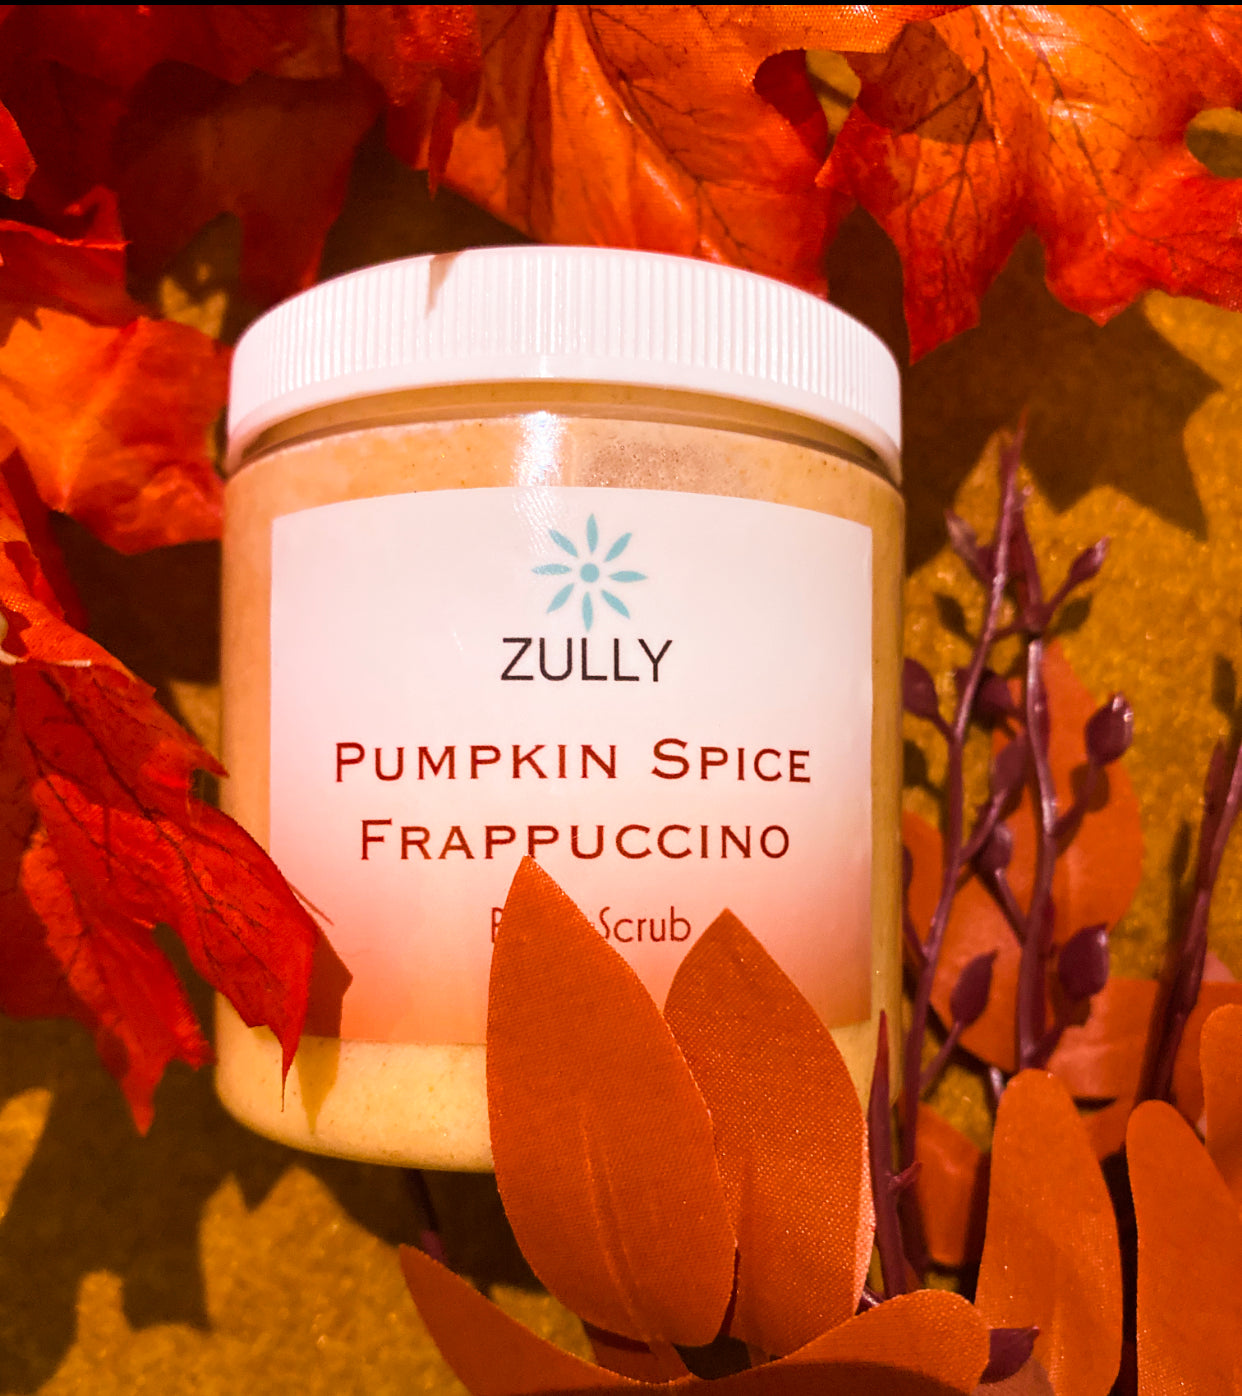 Pumpkin spice Frappuccino Body Scrub